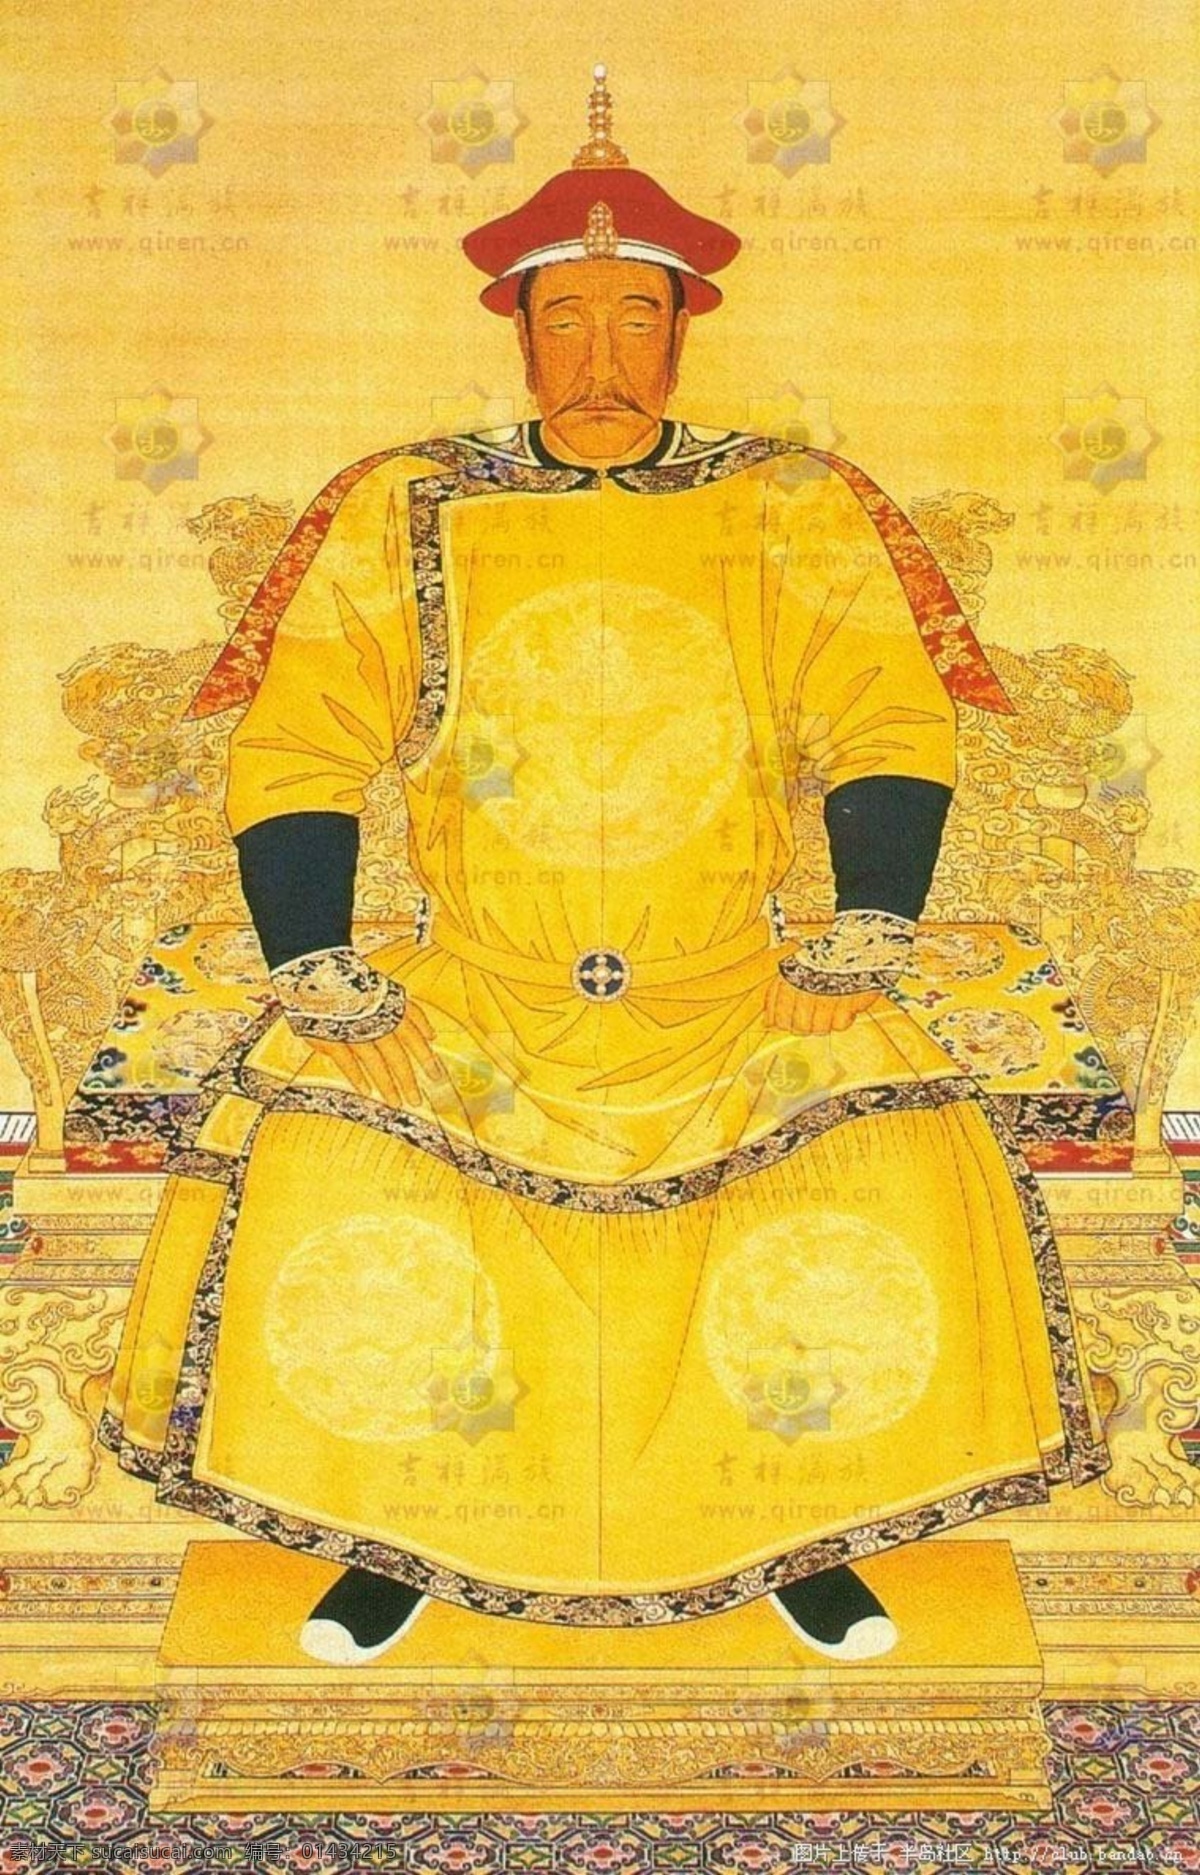 清太祖 地毯 皇帝 龙袍 龙椅 文化艺术